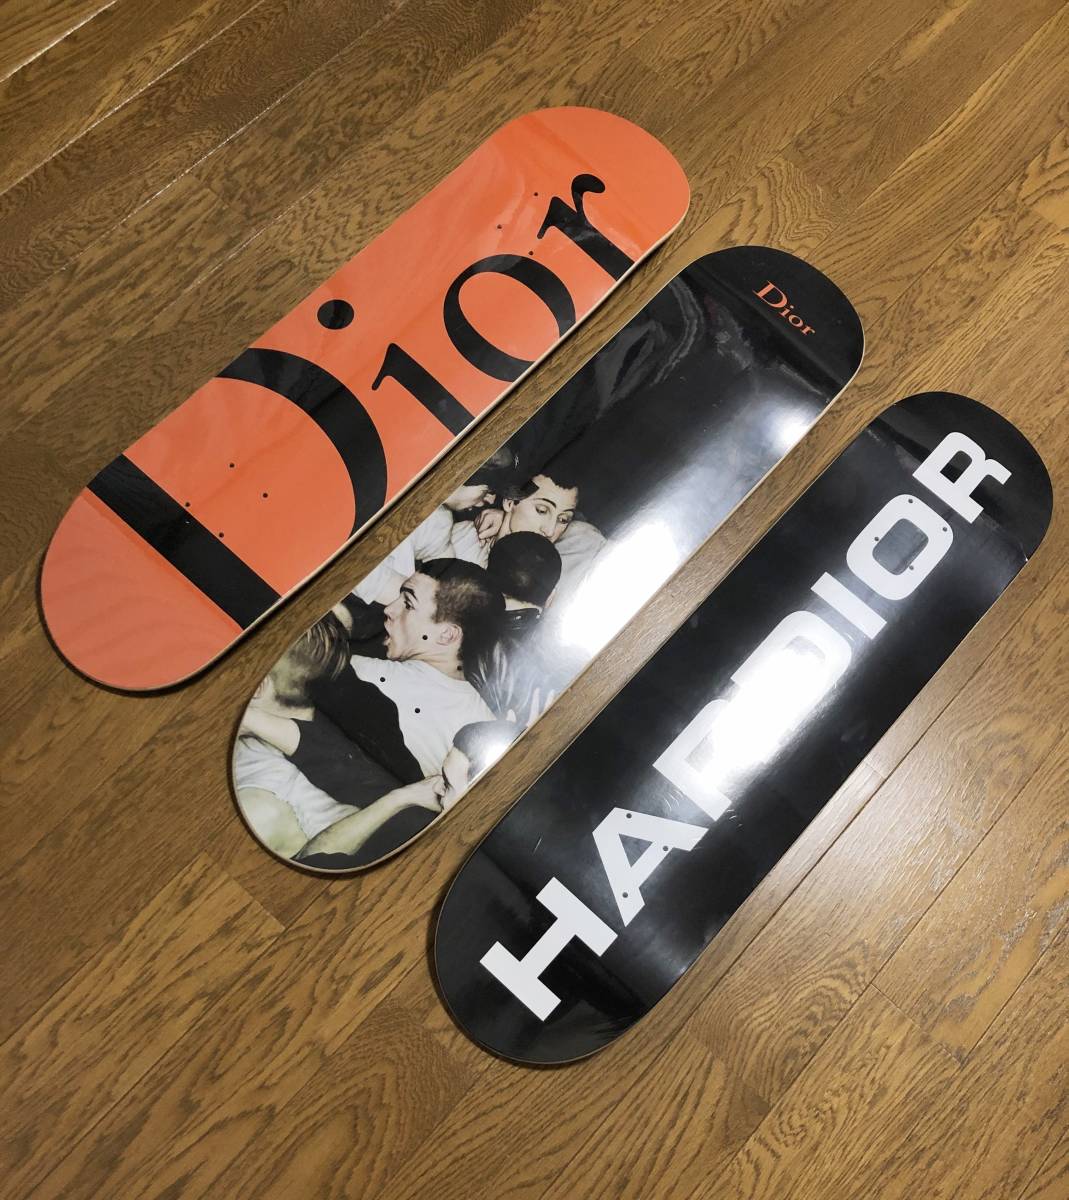  не использовался *[DIOR HOMME] 2017 SKATEBOARD DECK 3SET шелковый шаблон скейтборд скейтборд 3 шт. комплект Dior Homme 